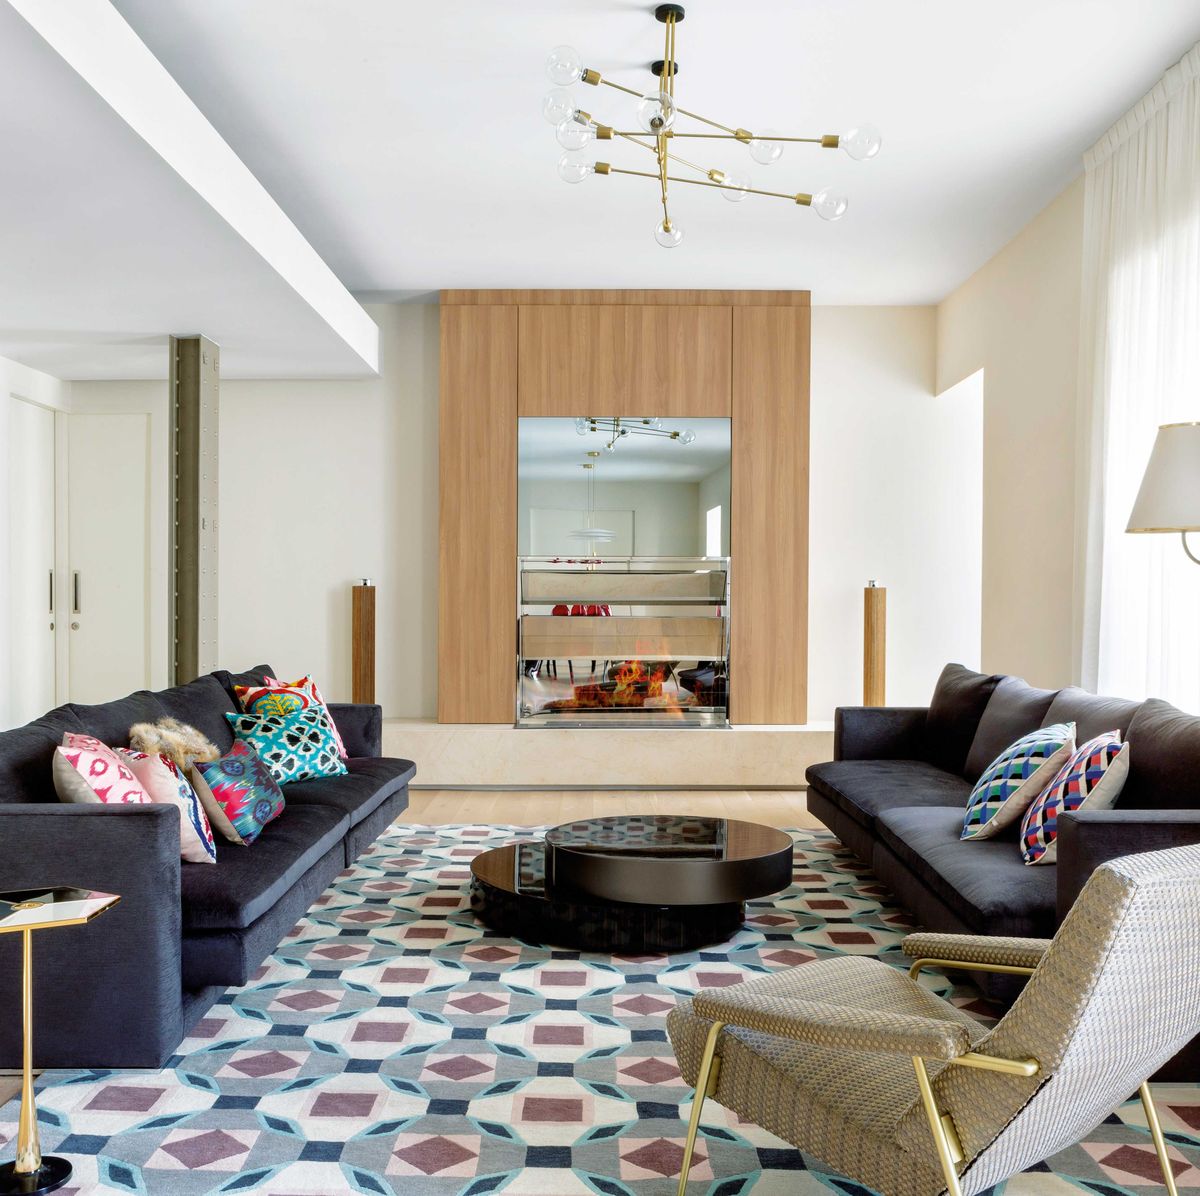 Por qué elegir alfombras vinílicas? - Home and Living